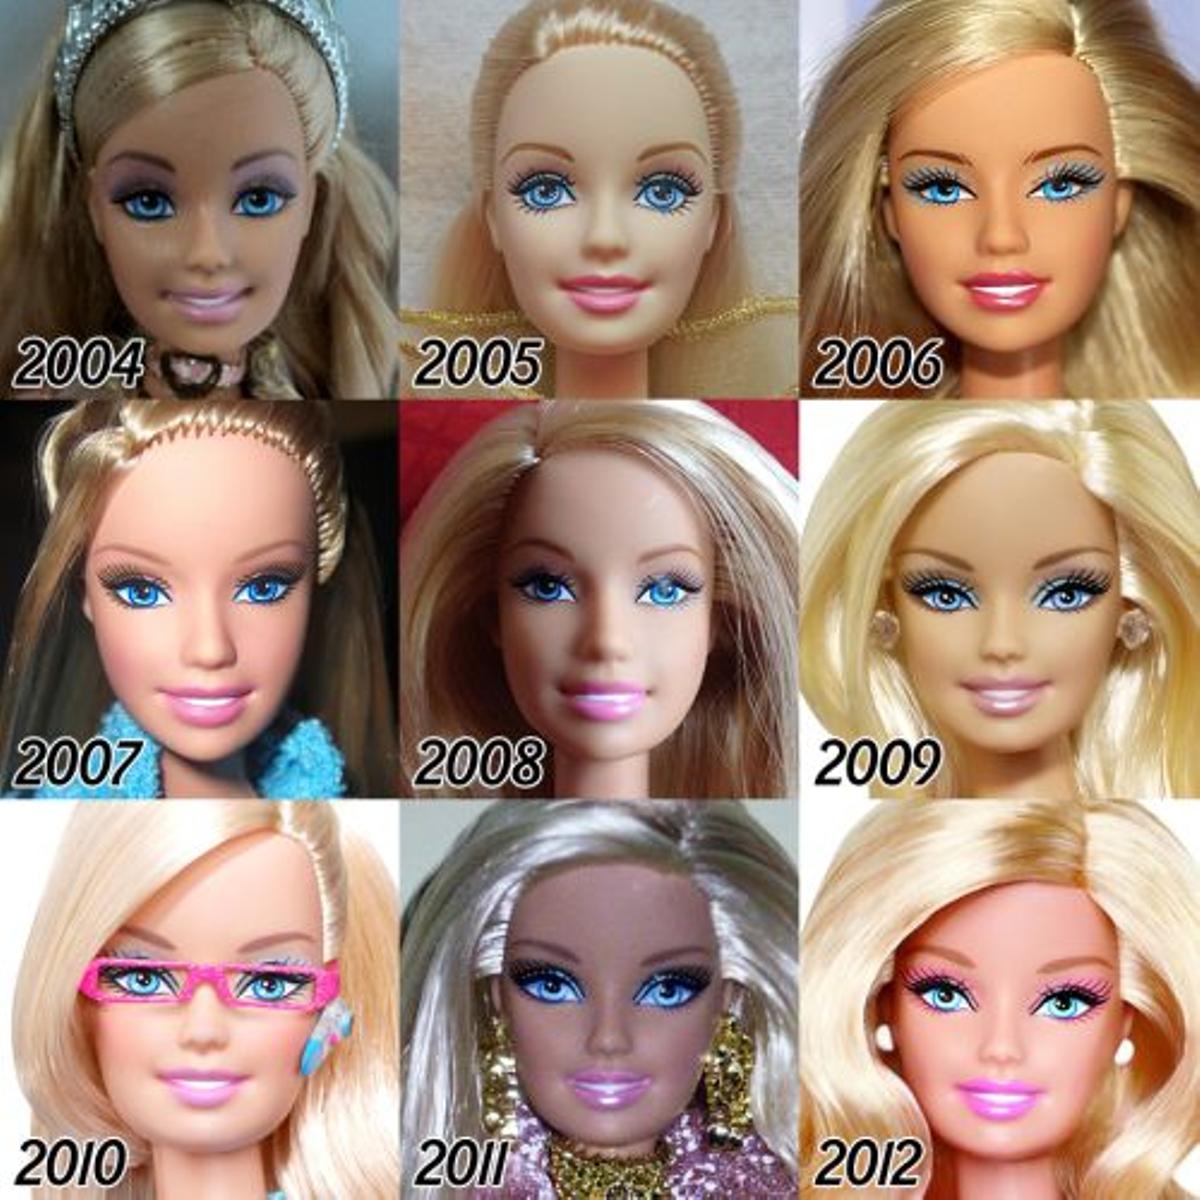 La evolución de Barbie desde 2004 a 2012